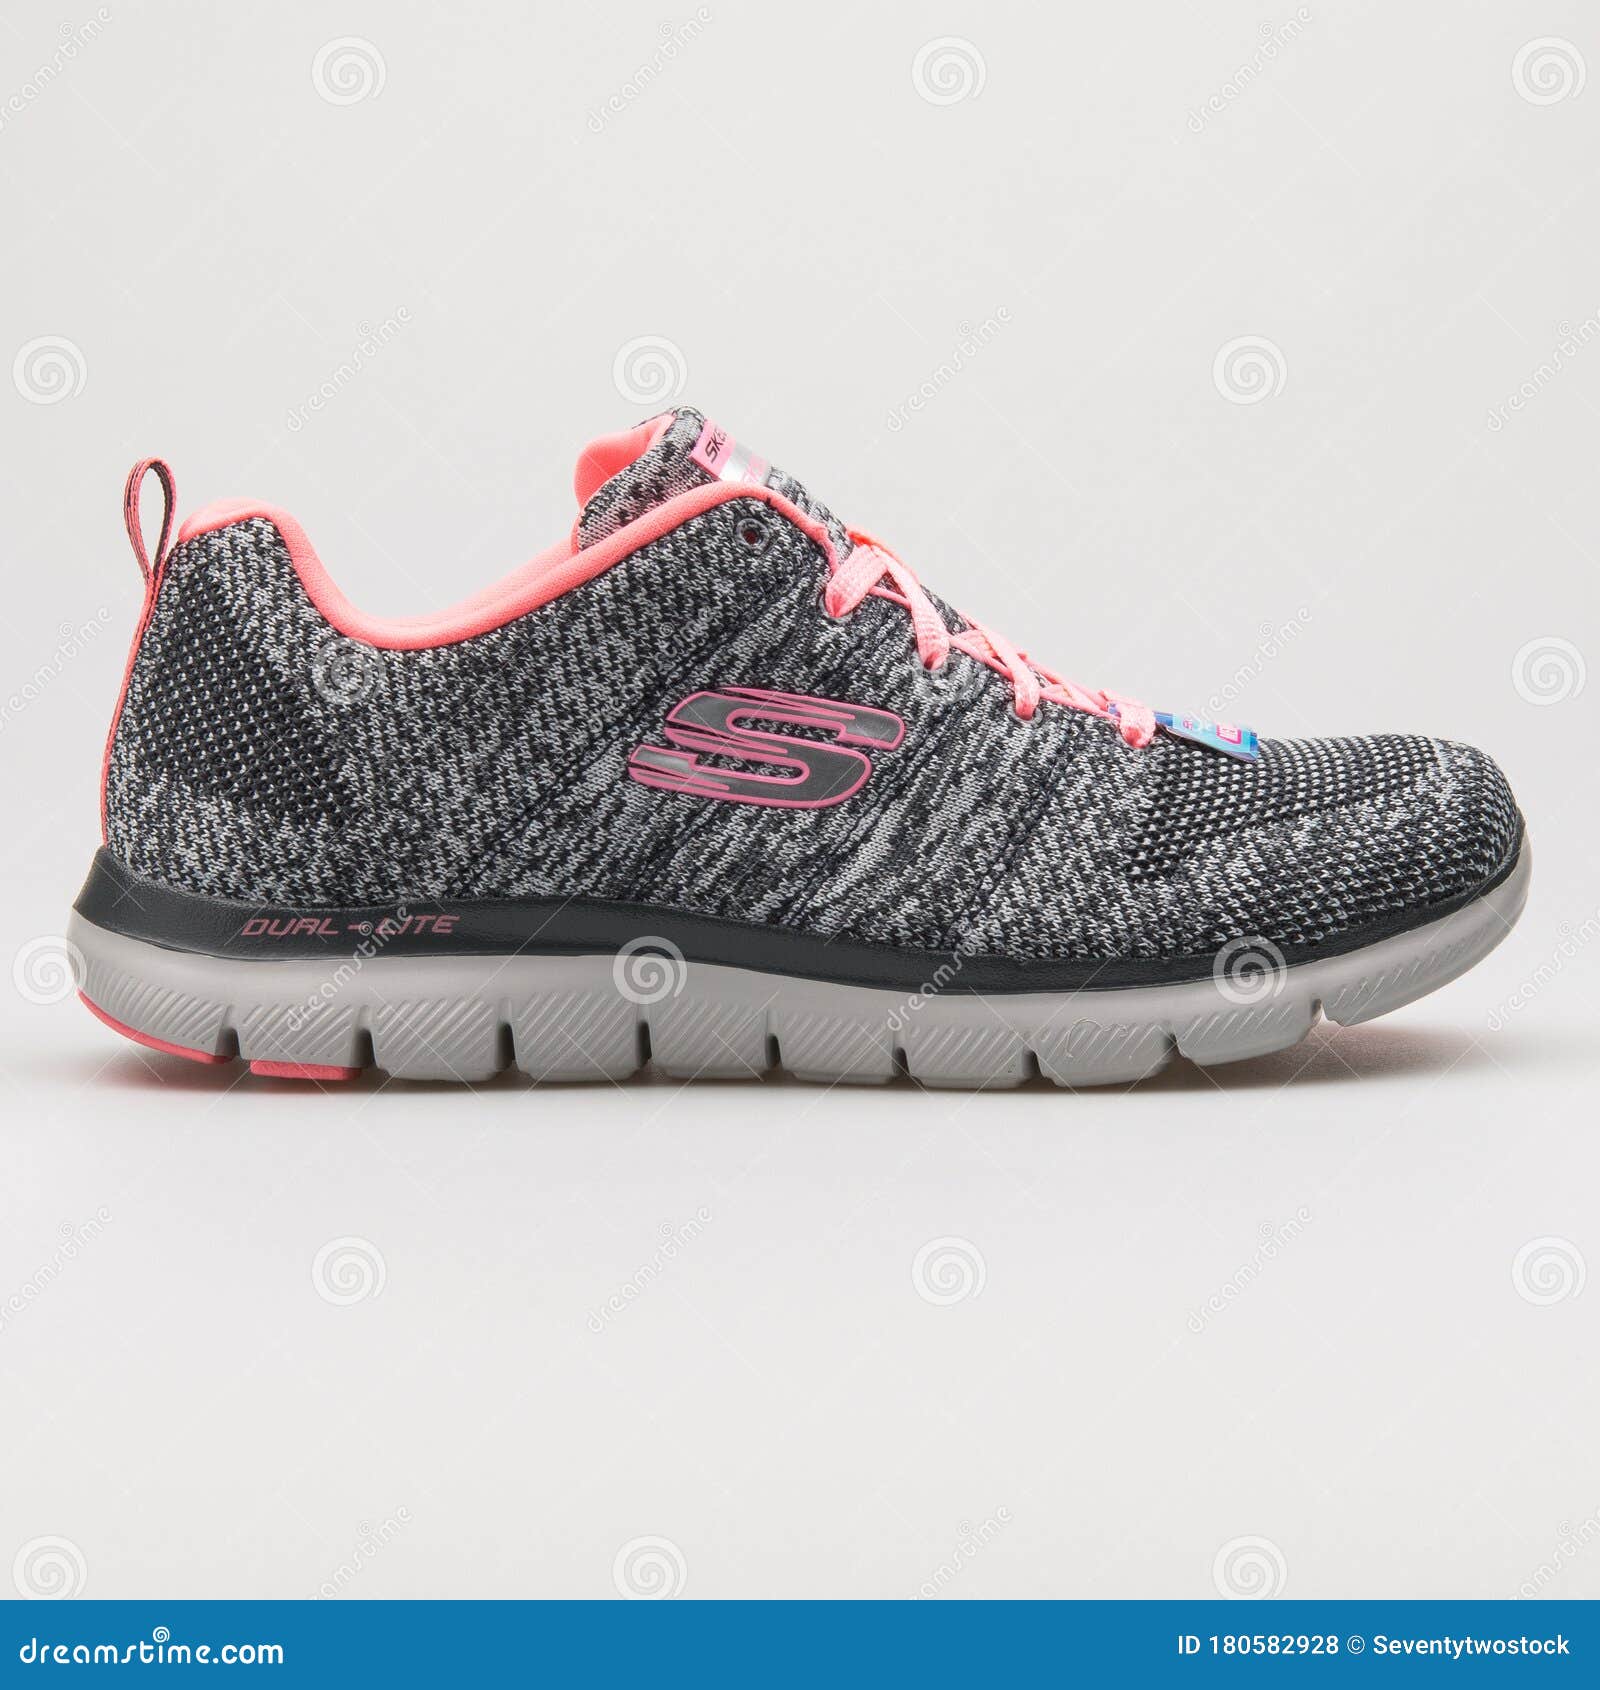 cerca Adentro Posicionamiento en buscadores Skechers Flex Appeal 2.0 High Energy Grey and Pink Sneaker Editorial Stock  Photo - Image of flex, laces: 180582928